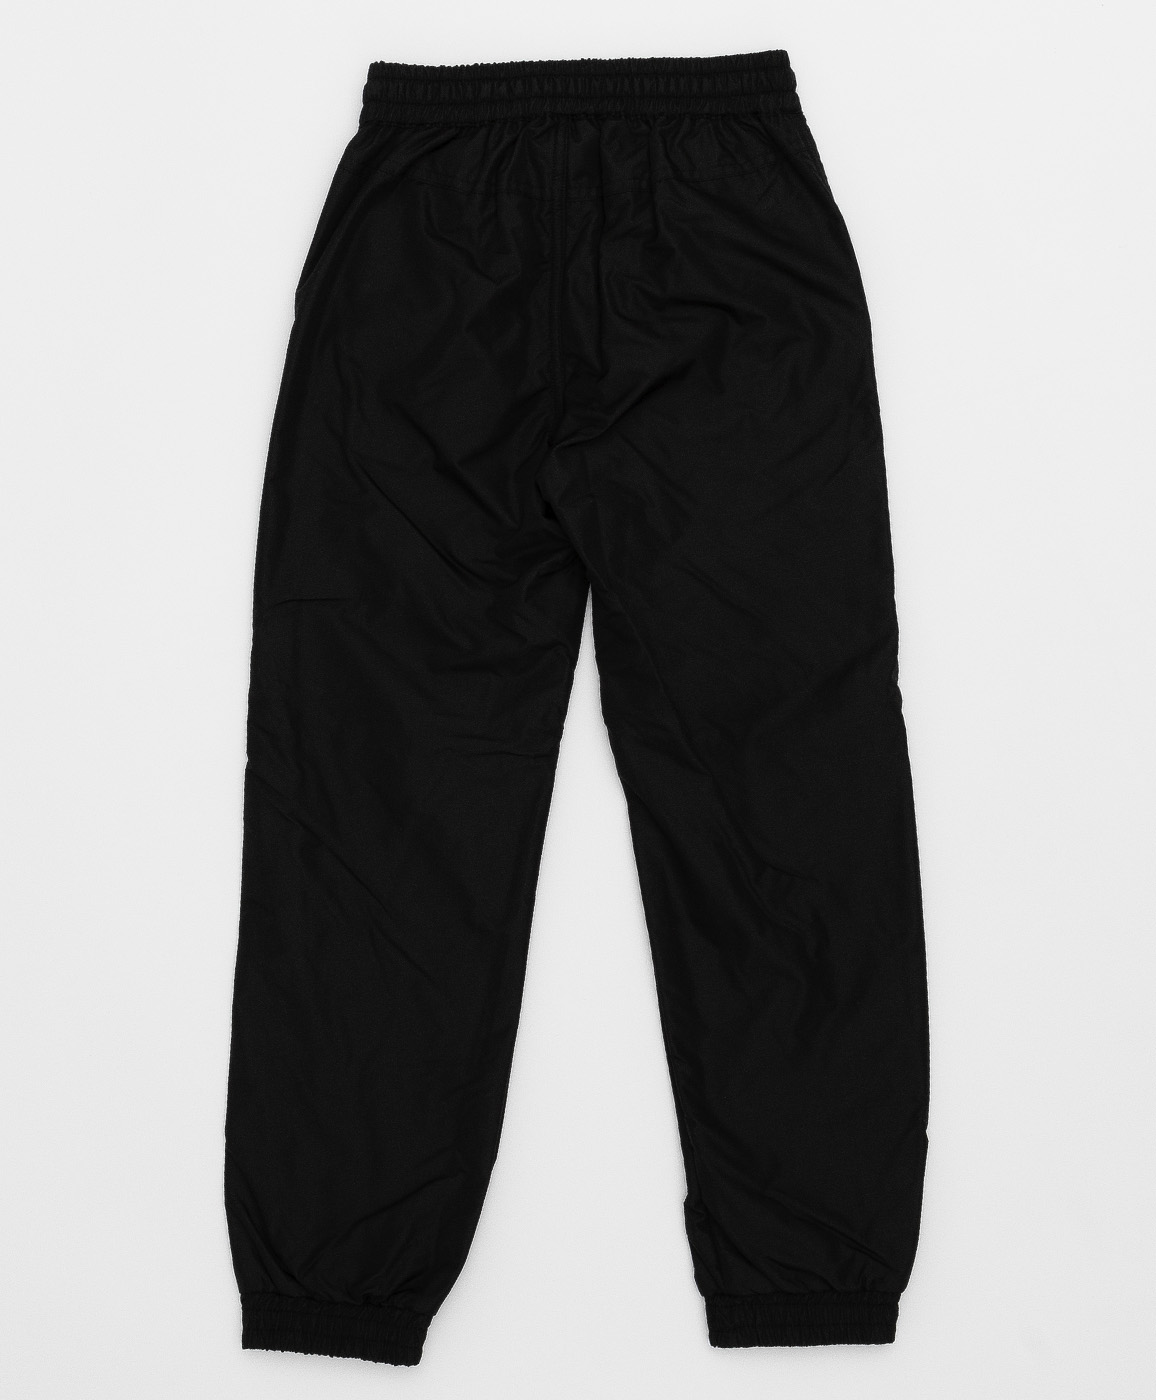 Черные брюки на флисе Button Blue 220BBBJC64020800, размер 134, цвет черный regular fit / прямые - фото 2